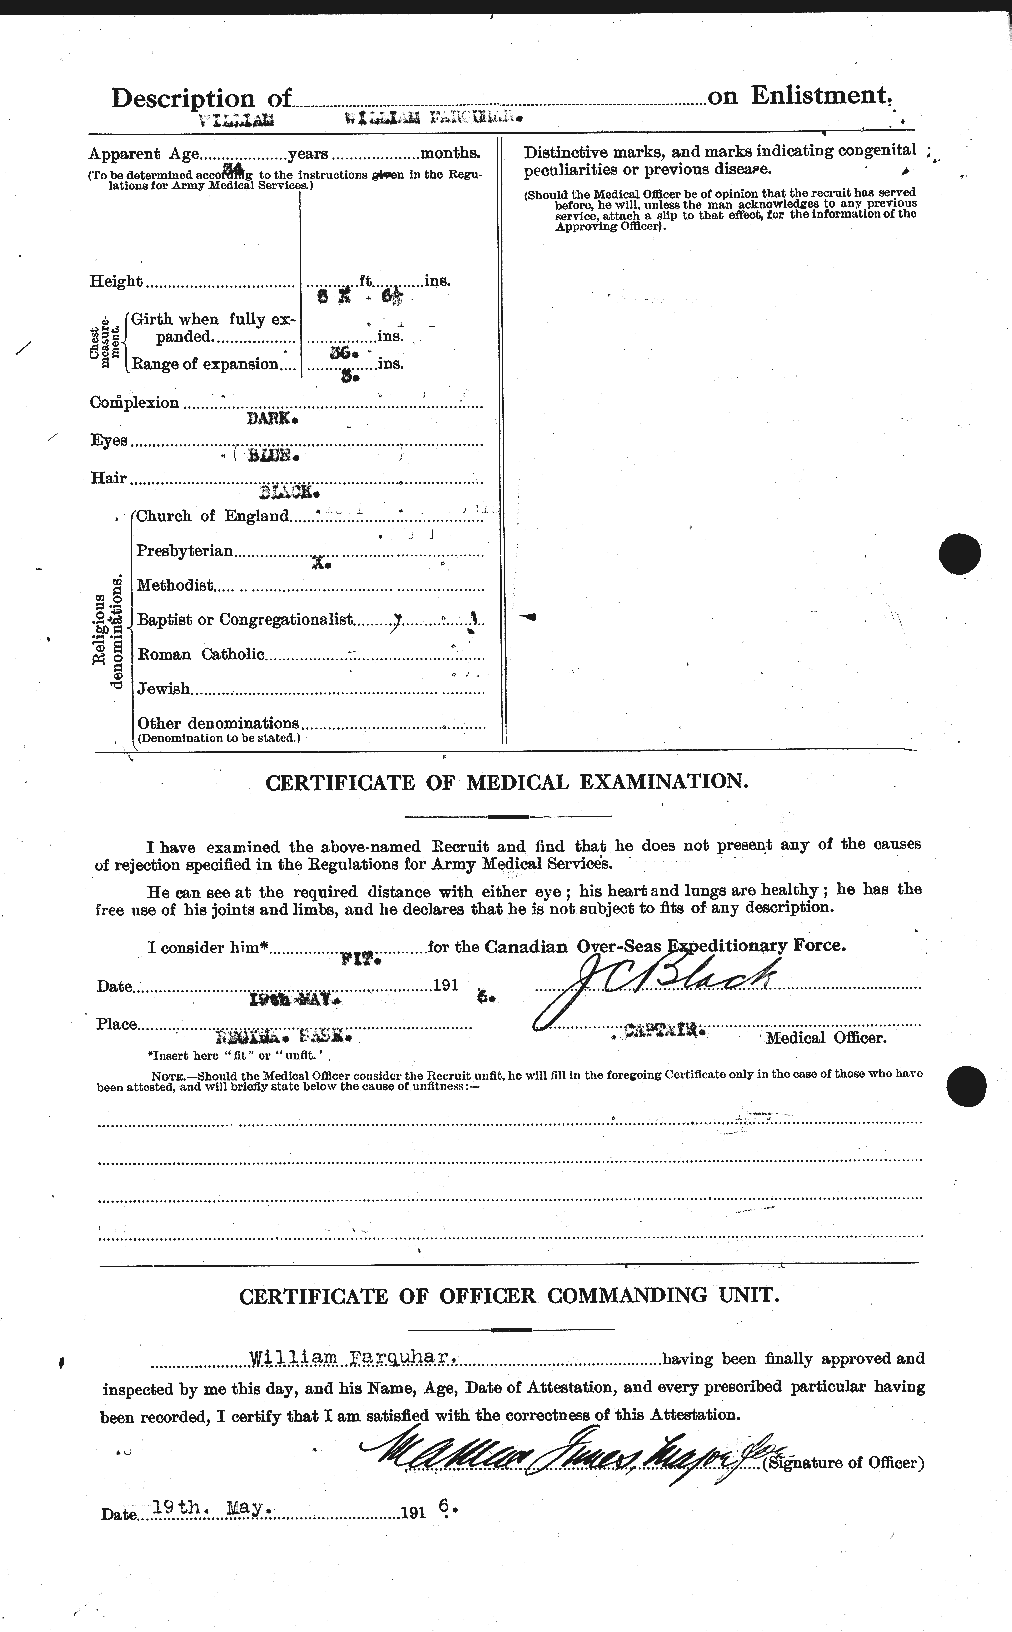 Dossiers du Personnel de la Première Guerre mondiale - CEC 319283b